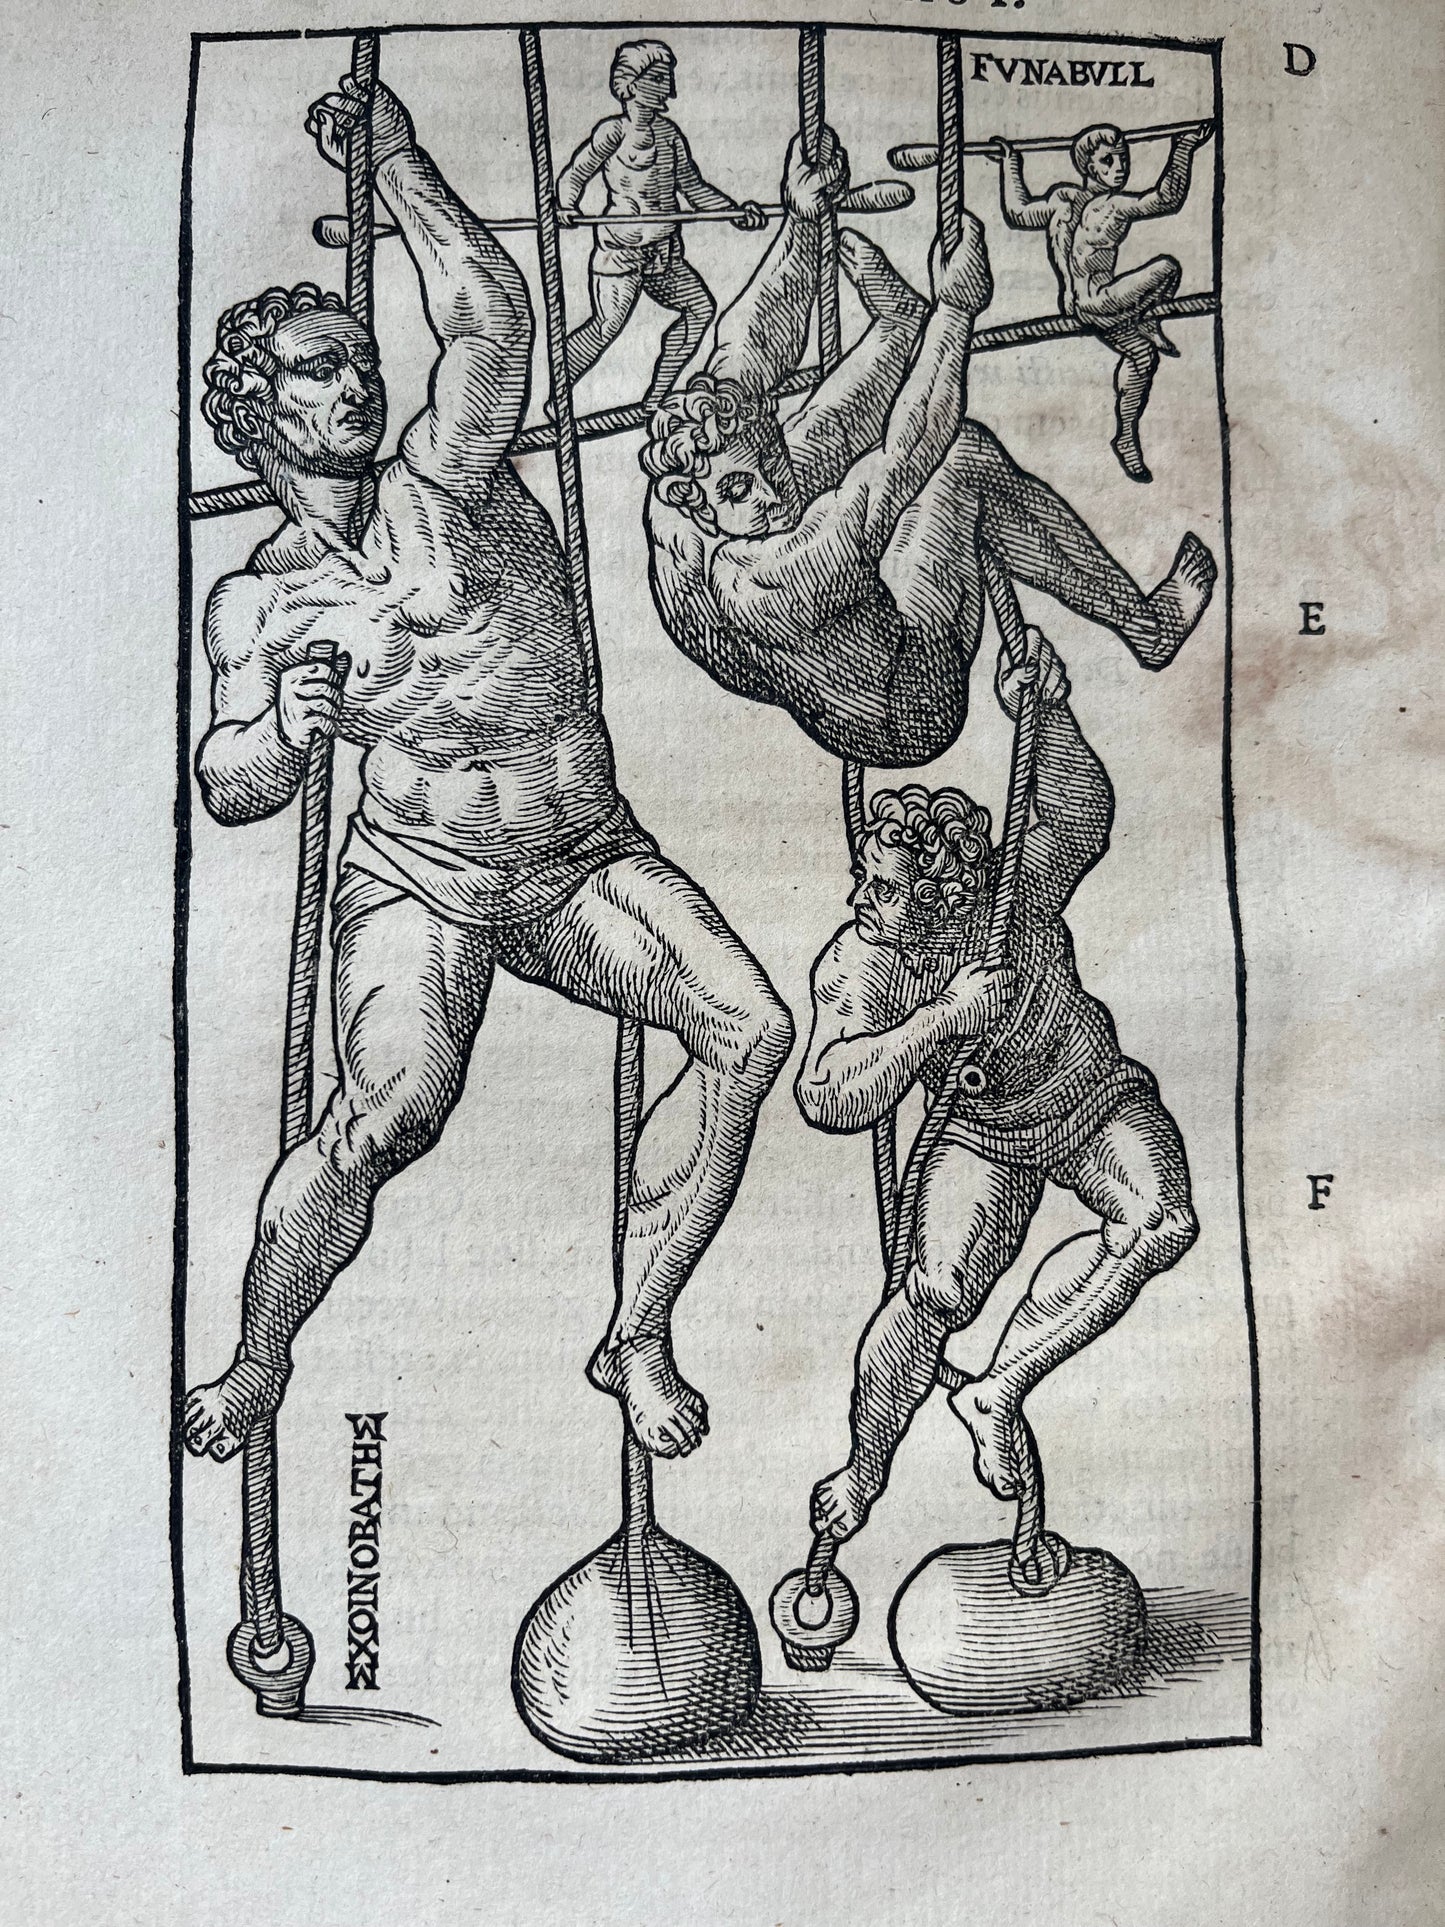 De arte gymnastica, libri sex - Girolamo Mercuriale - 1577